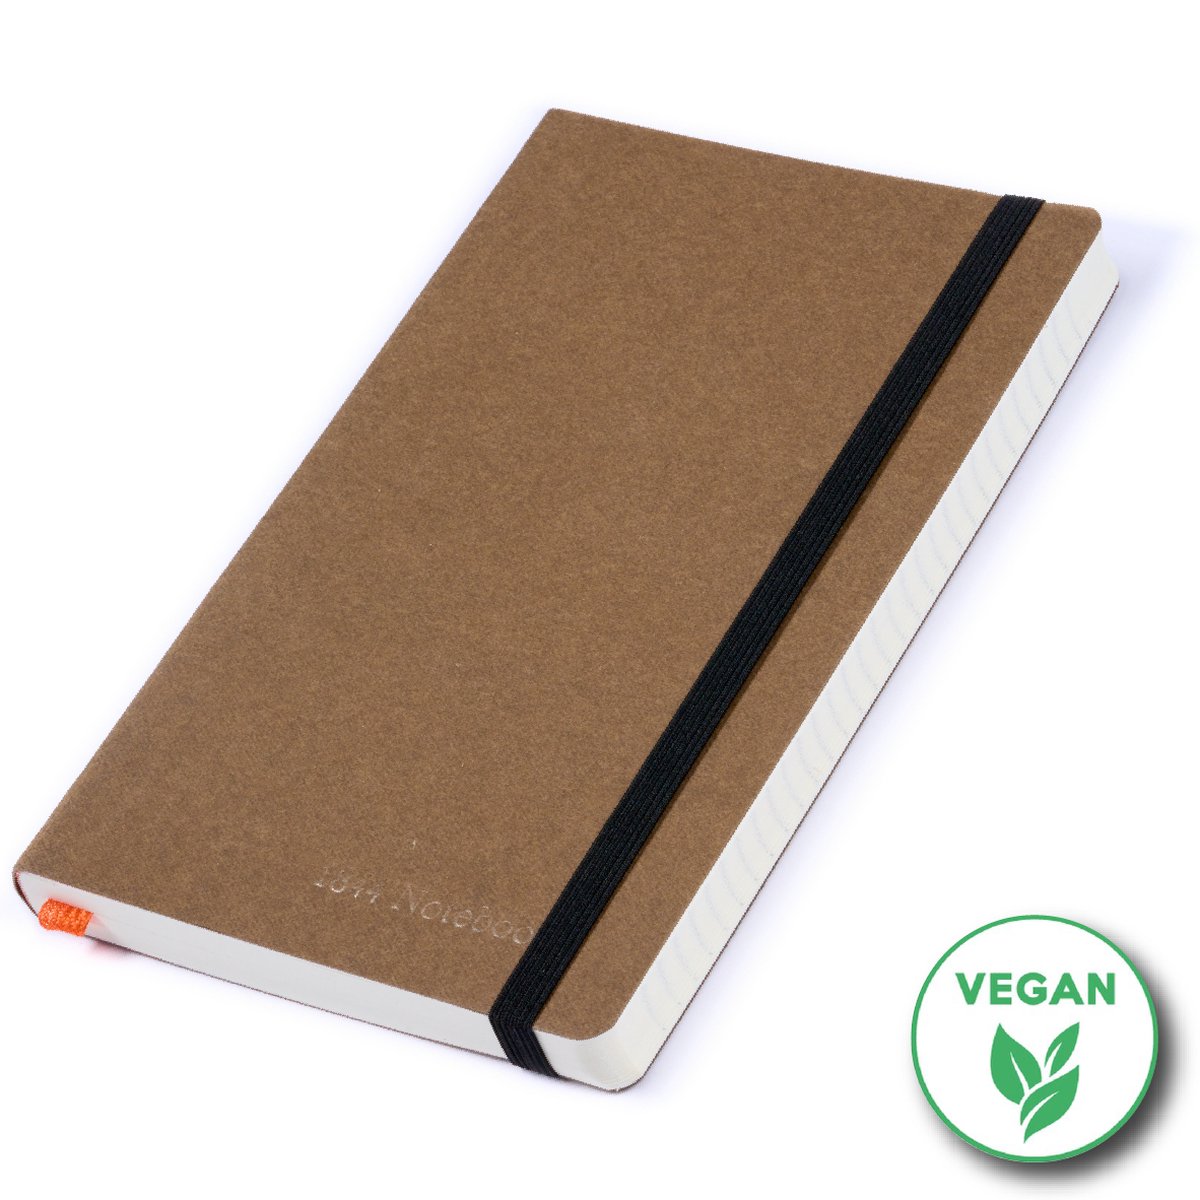 Notitieboek - Notebook A5 - Moederdag cadeau - Cadeau voor man - Vegan - Notitieboekje - Handgemaakt in Nederland - Notebook - Notitieblok - Chocolade bruin - 1844 Notebooks